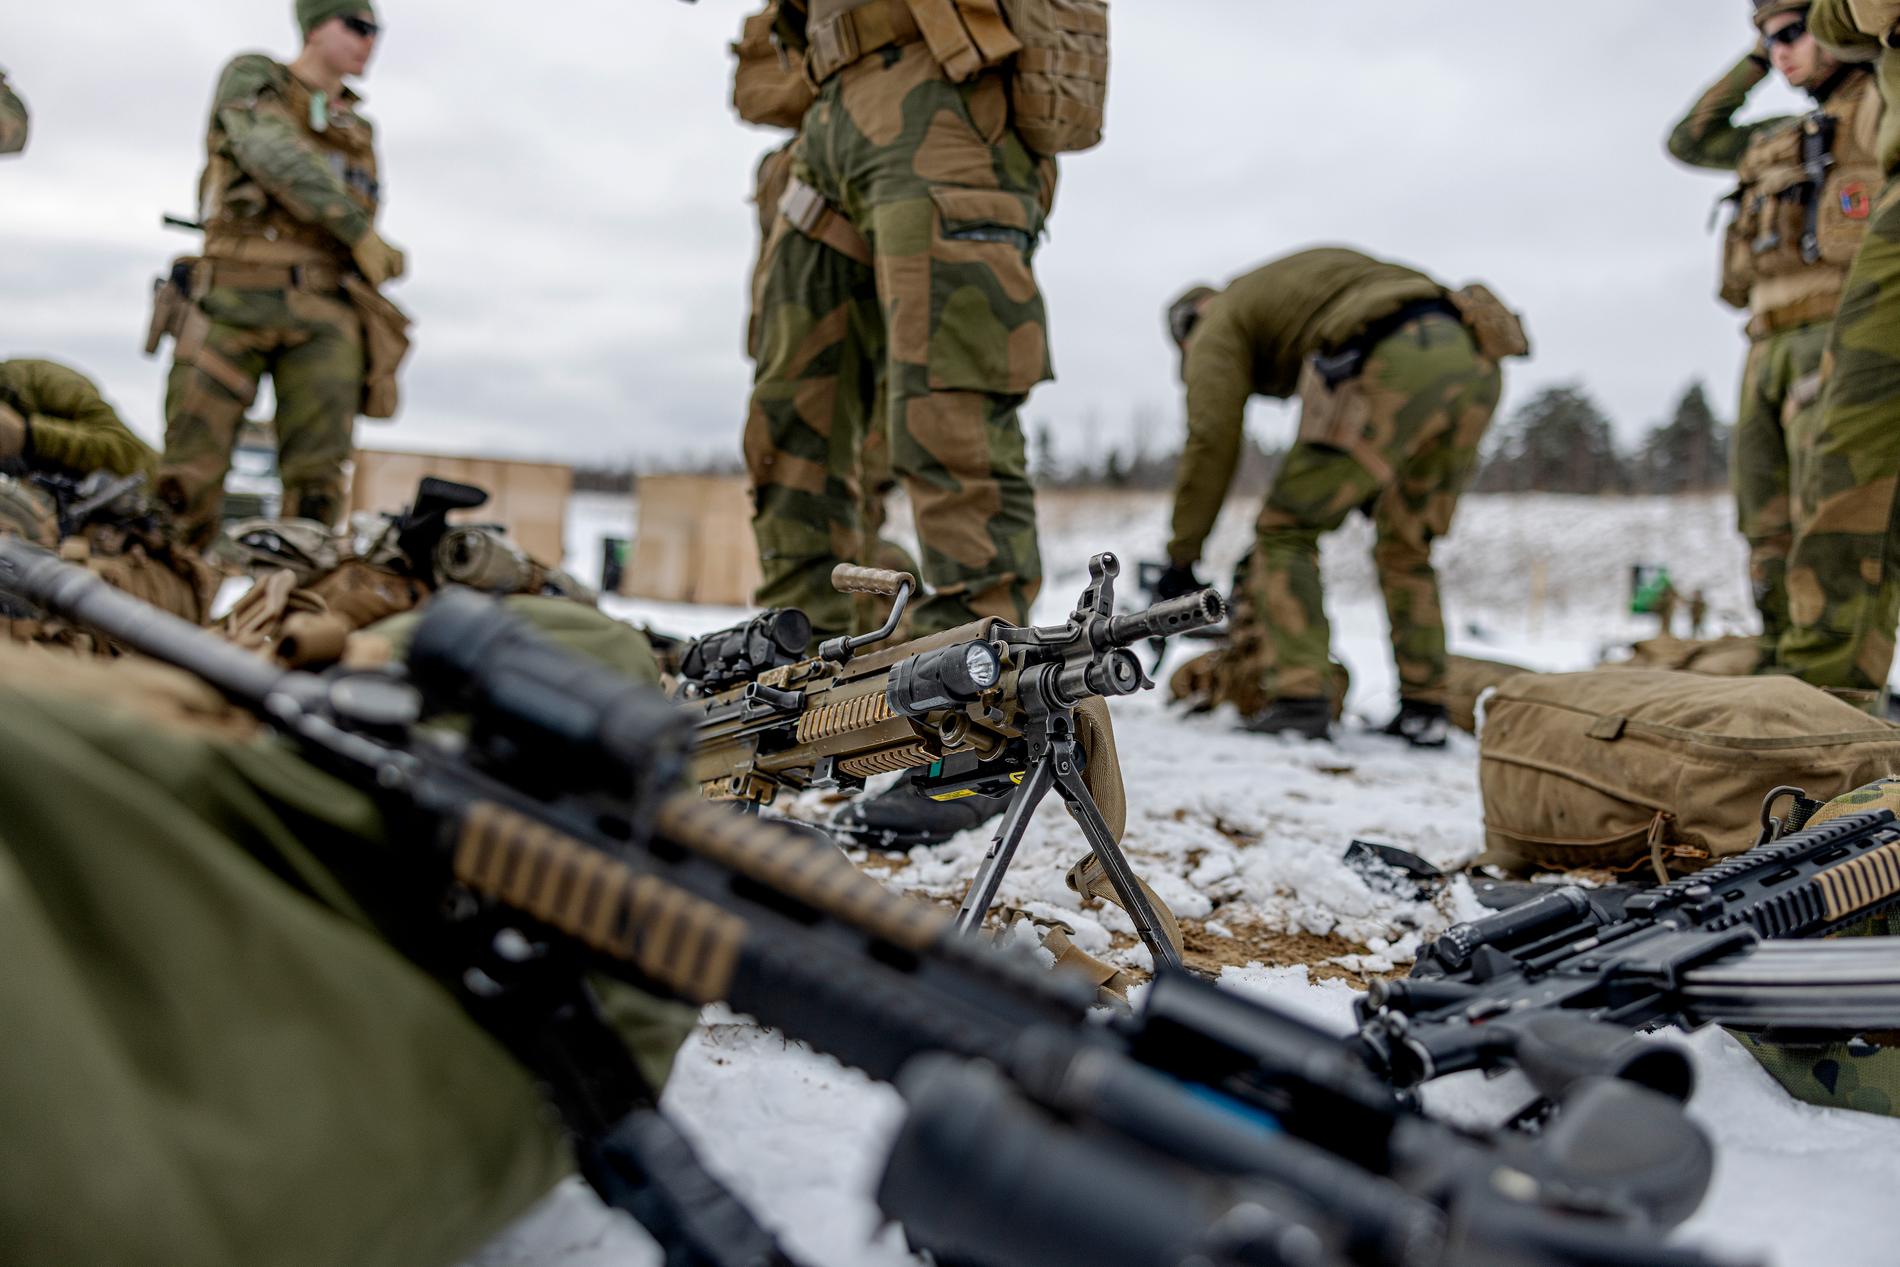 ”Hur försvarsgarantin skulle tillämpas i praktiken om exempelvis Ryssland skulle attackera ett Sverige som är Nato-medlem är svårt att säkert slå fast.”